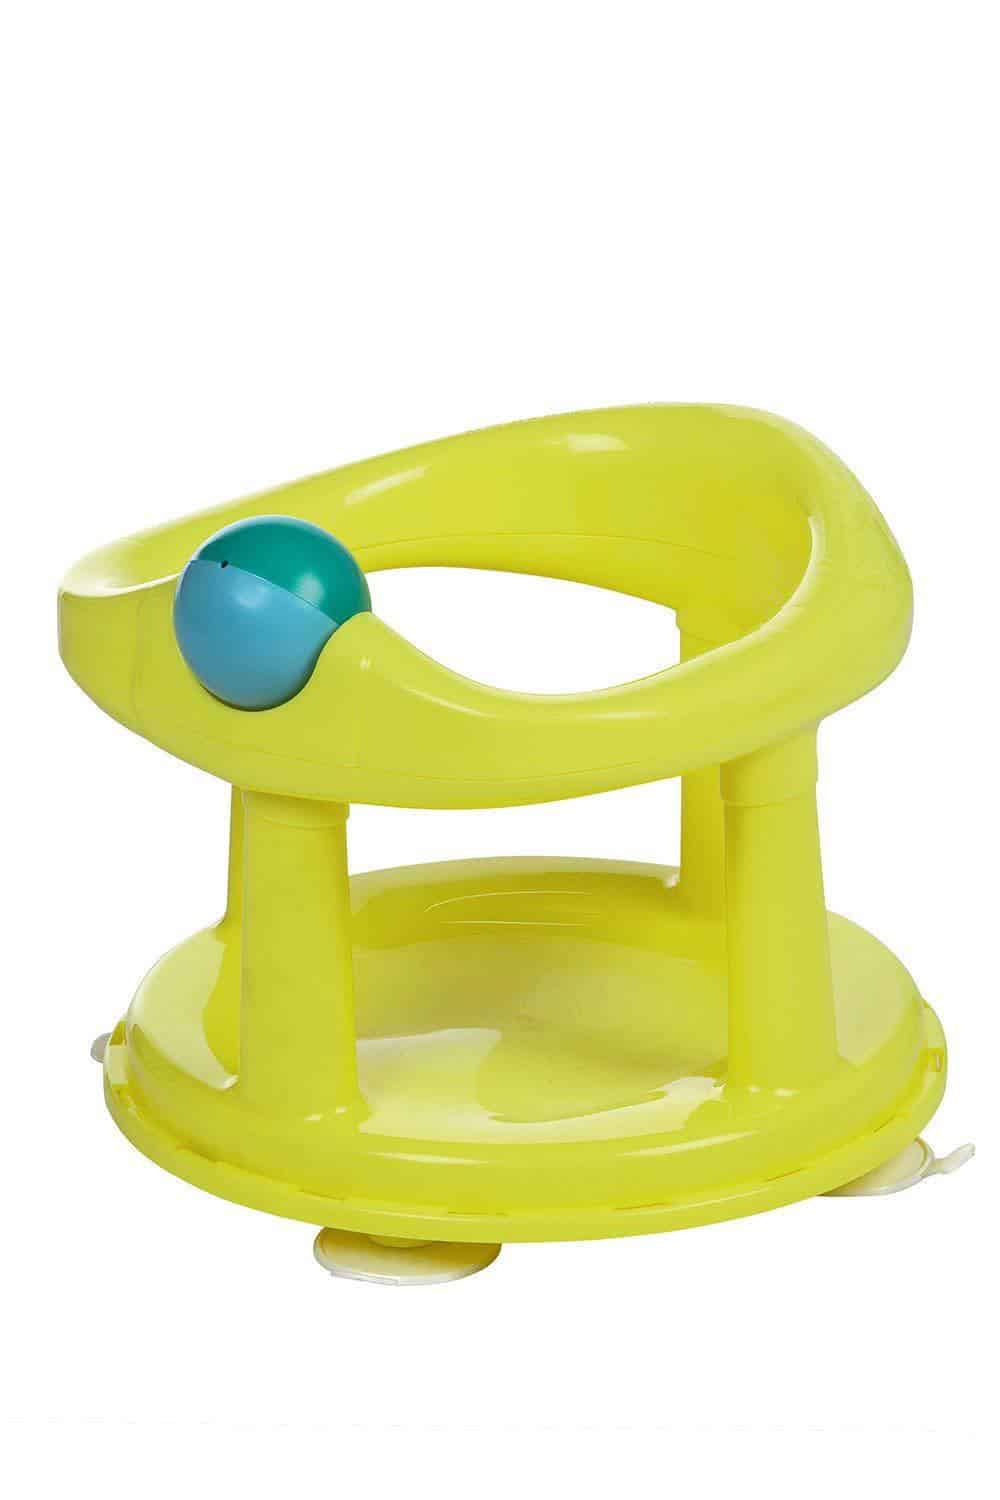 Кресло для купания. Стульчик для ванной Safety 1st детский. Сиденье для купания. Стул для купания малыша. Стул для купания в ванной.